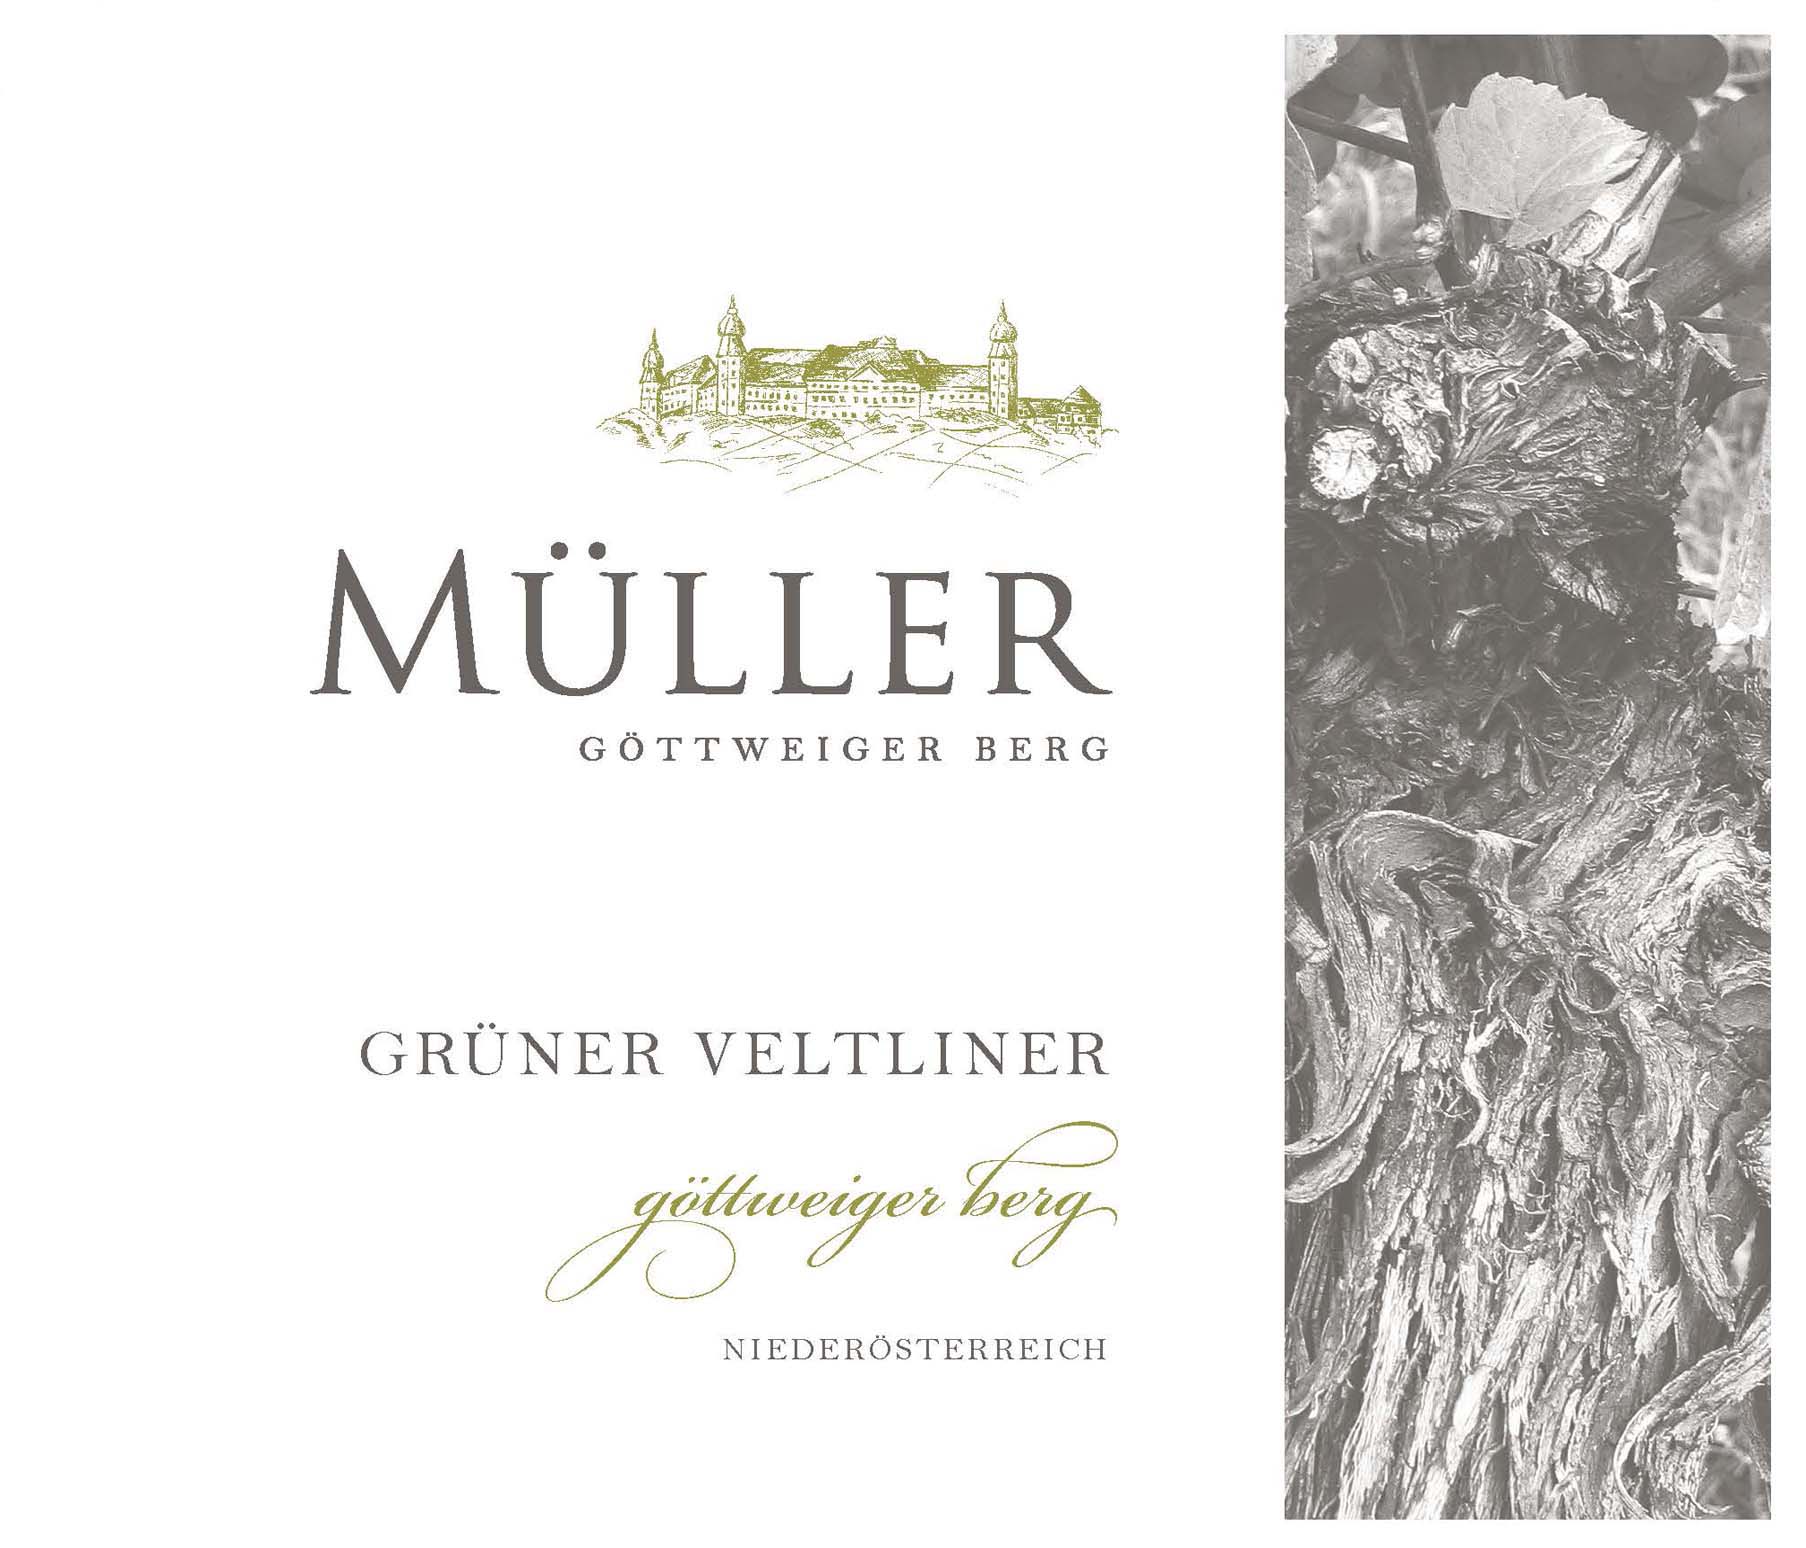 Gruner Veltliner - Muller label